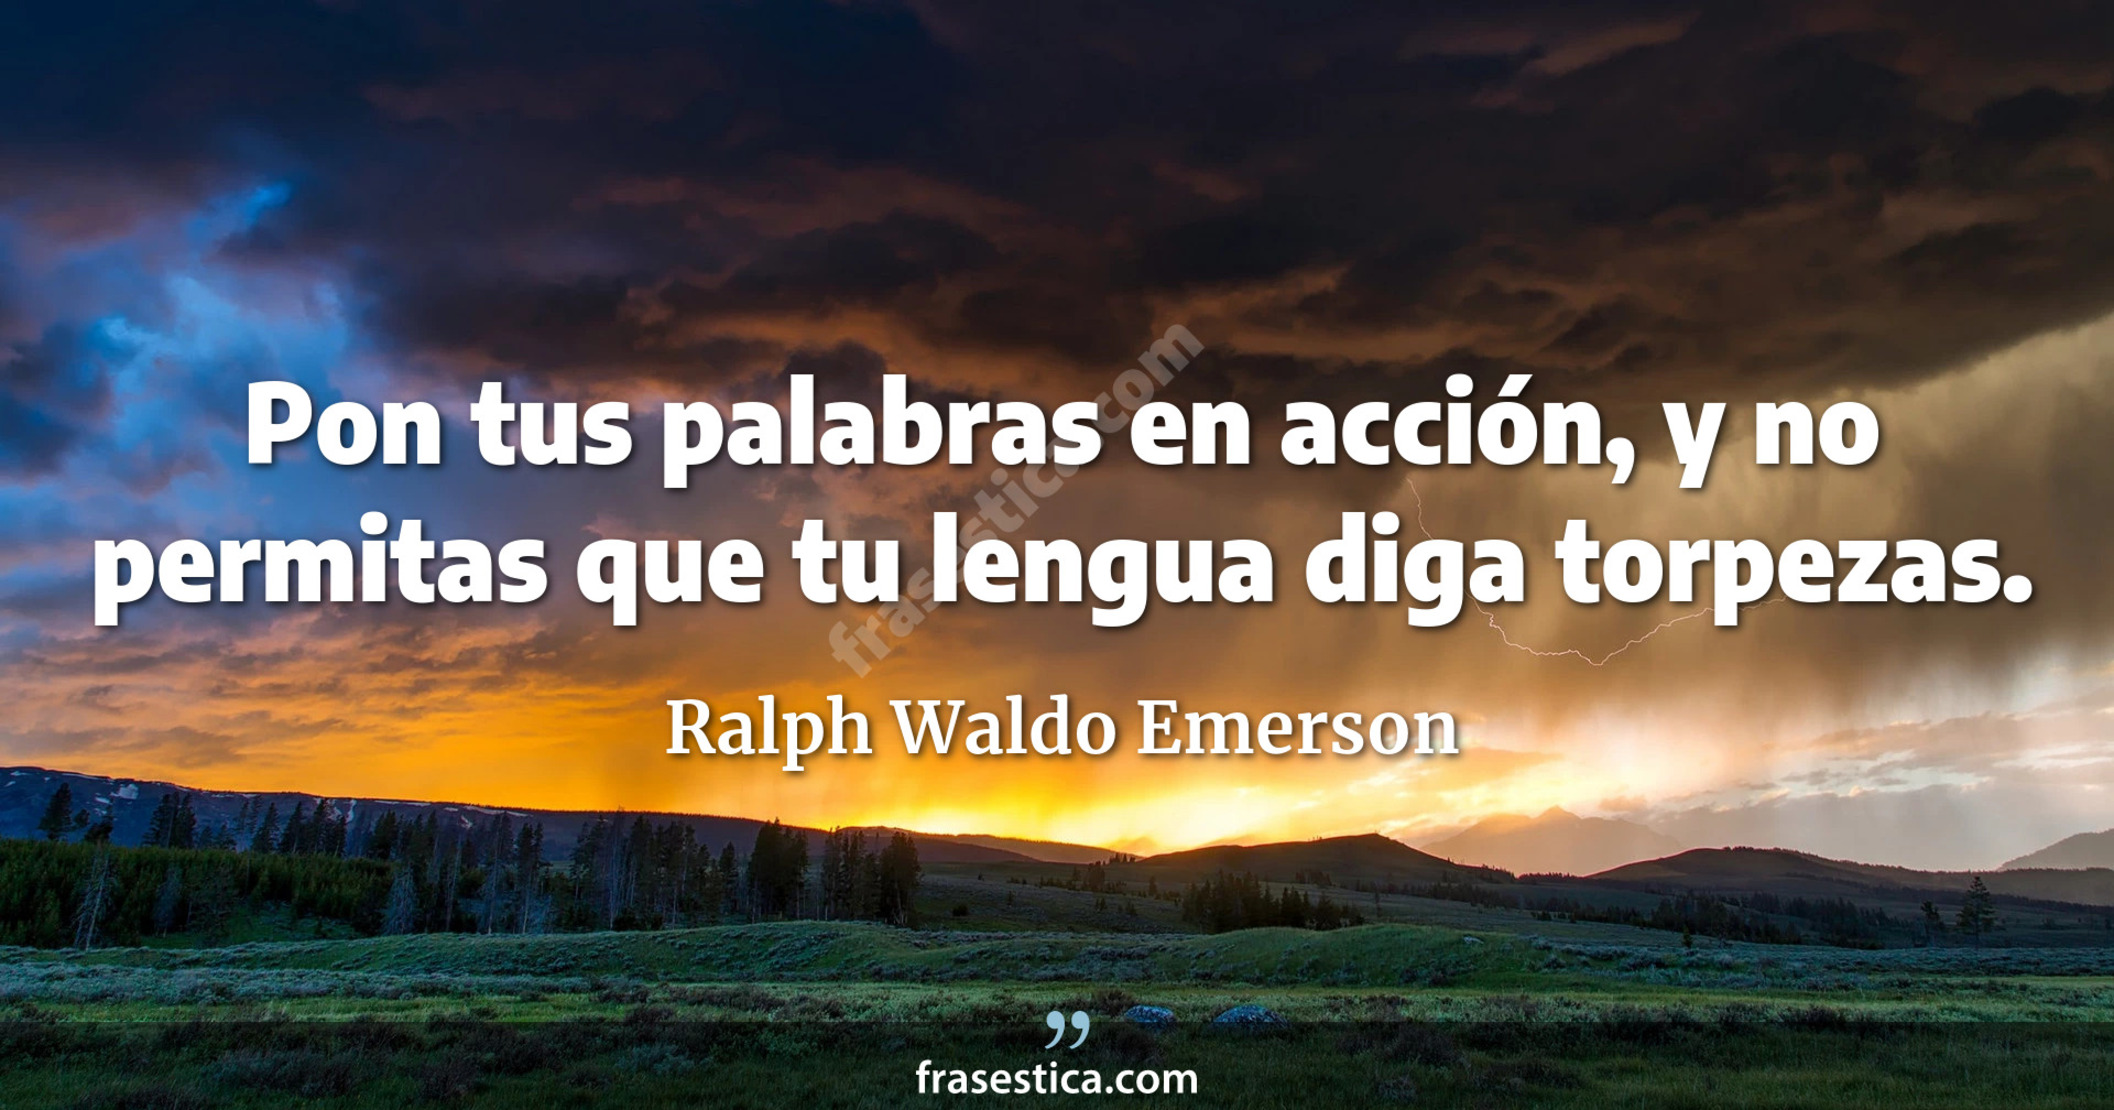 Pon tus palabras en acción, y no permitas que tu lengua diga torpezas. - Ralph Waldo Emerson